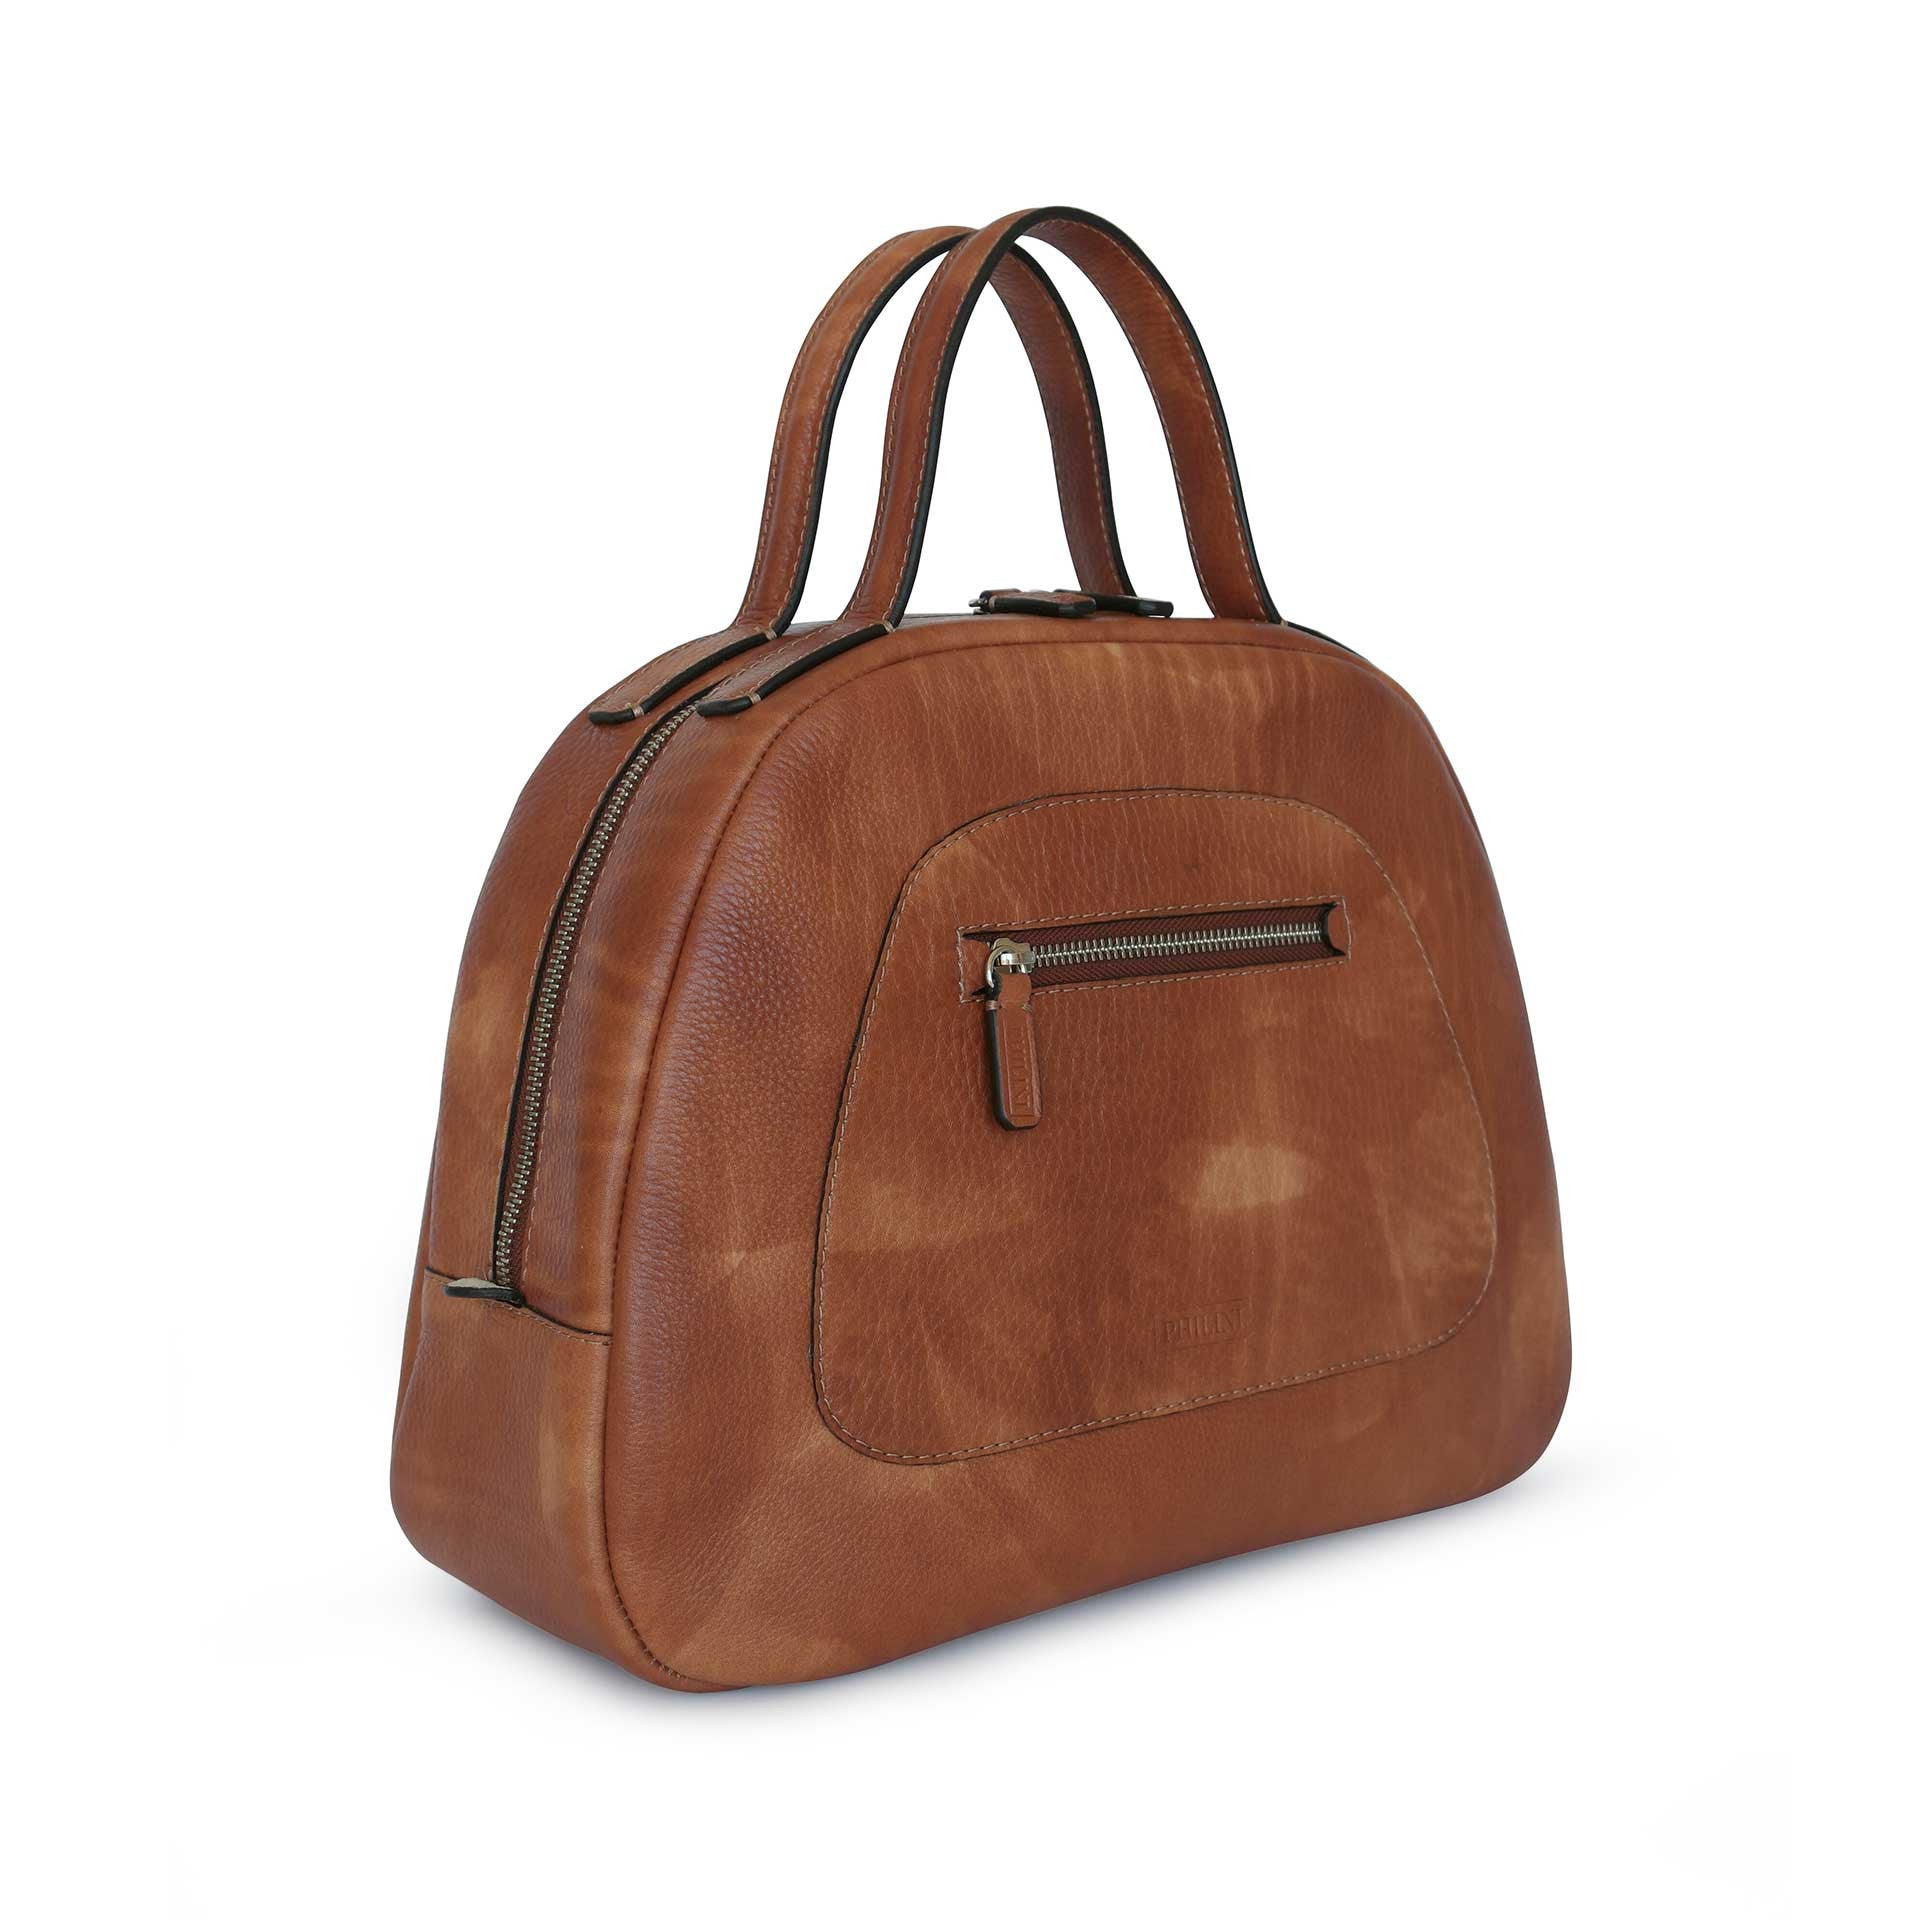 PHILINI BAGS Handbag Vintage Style in Cognac - Domi